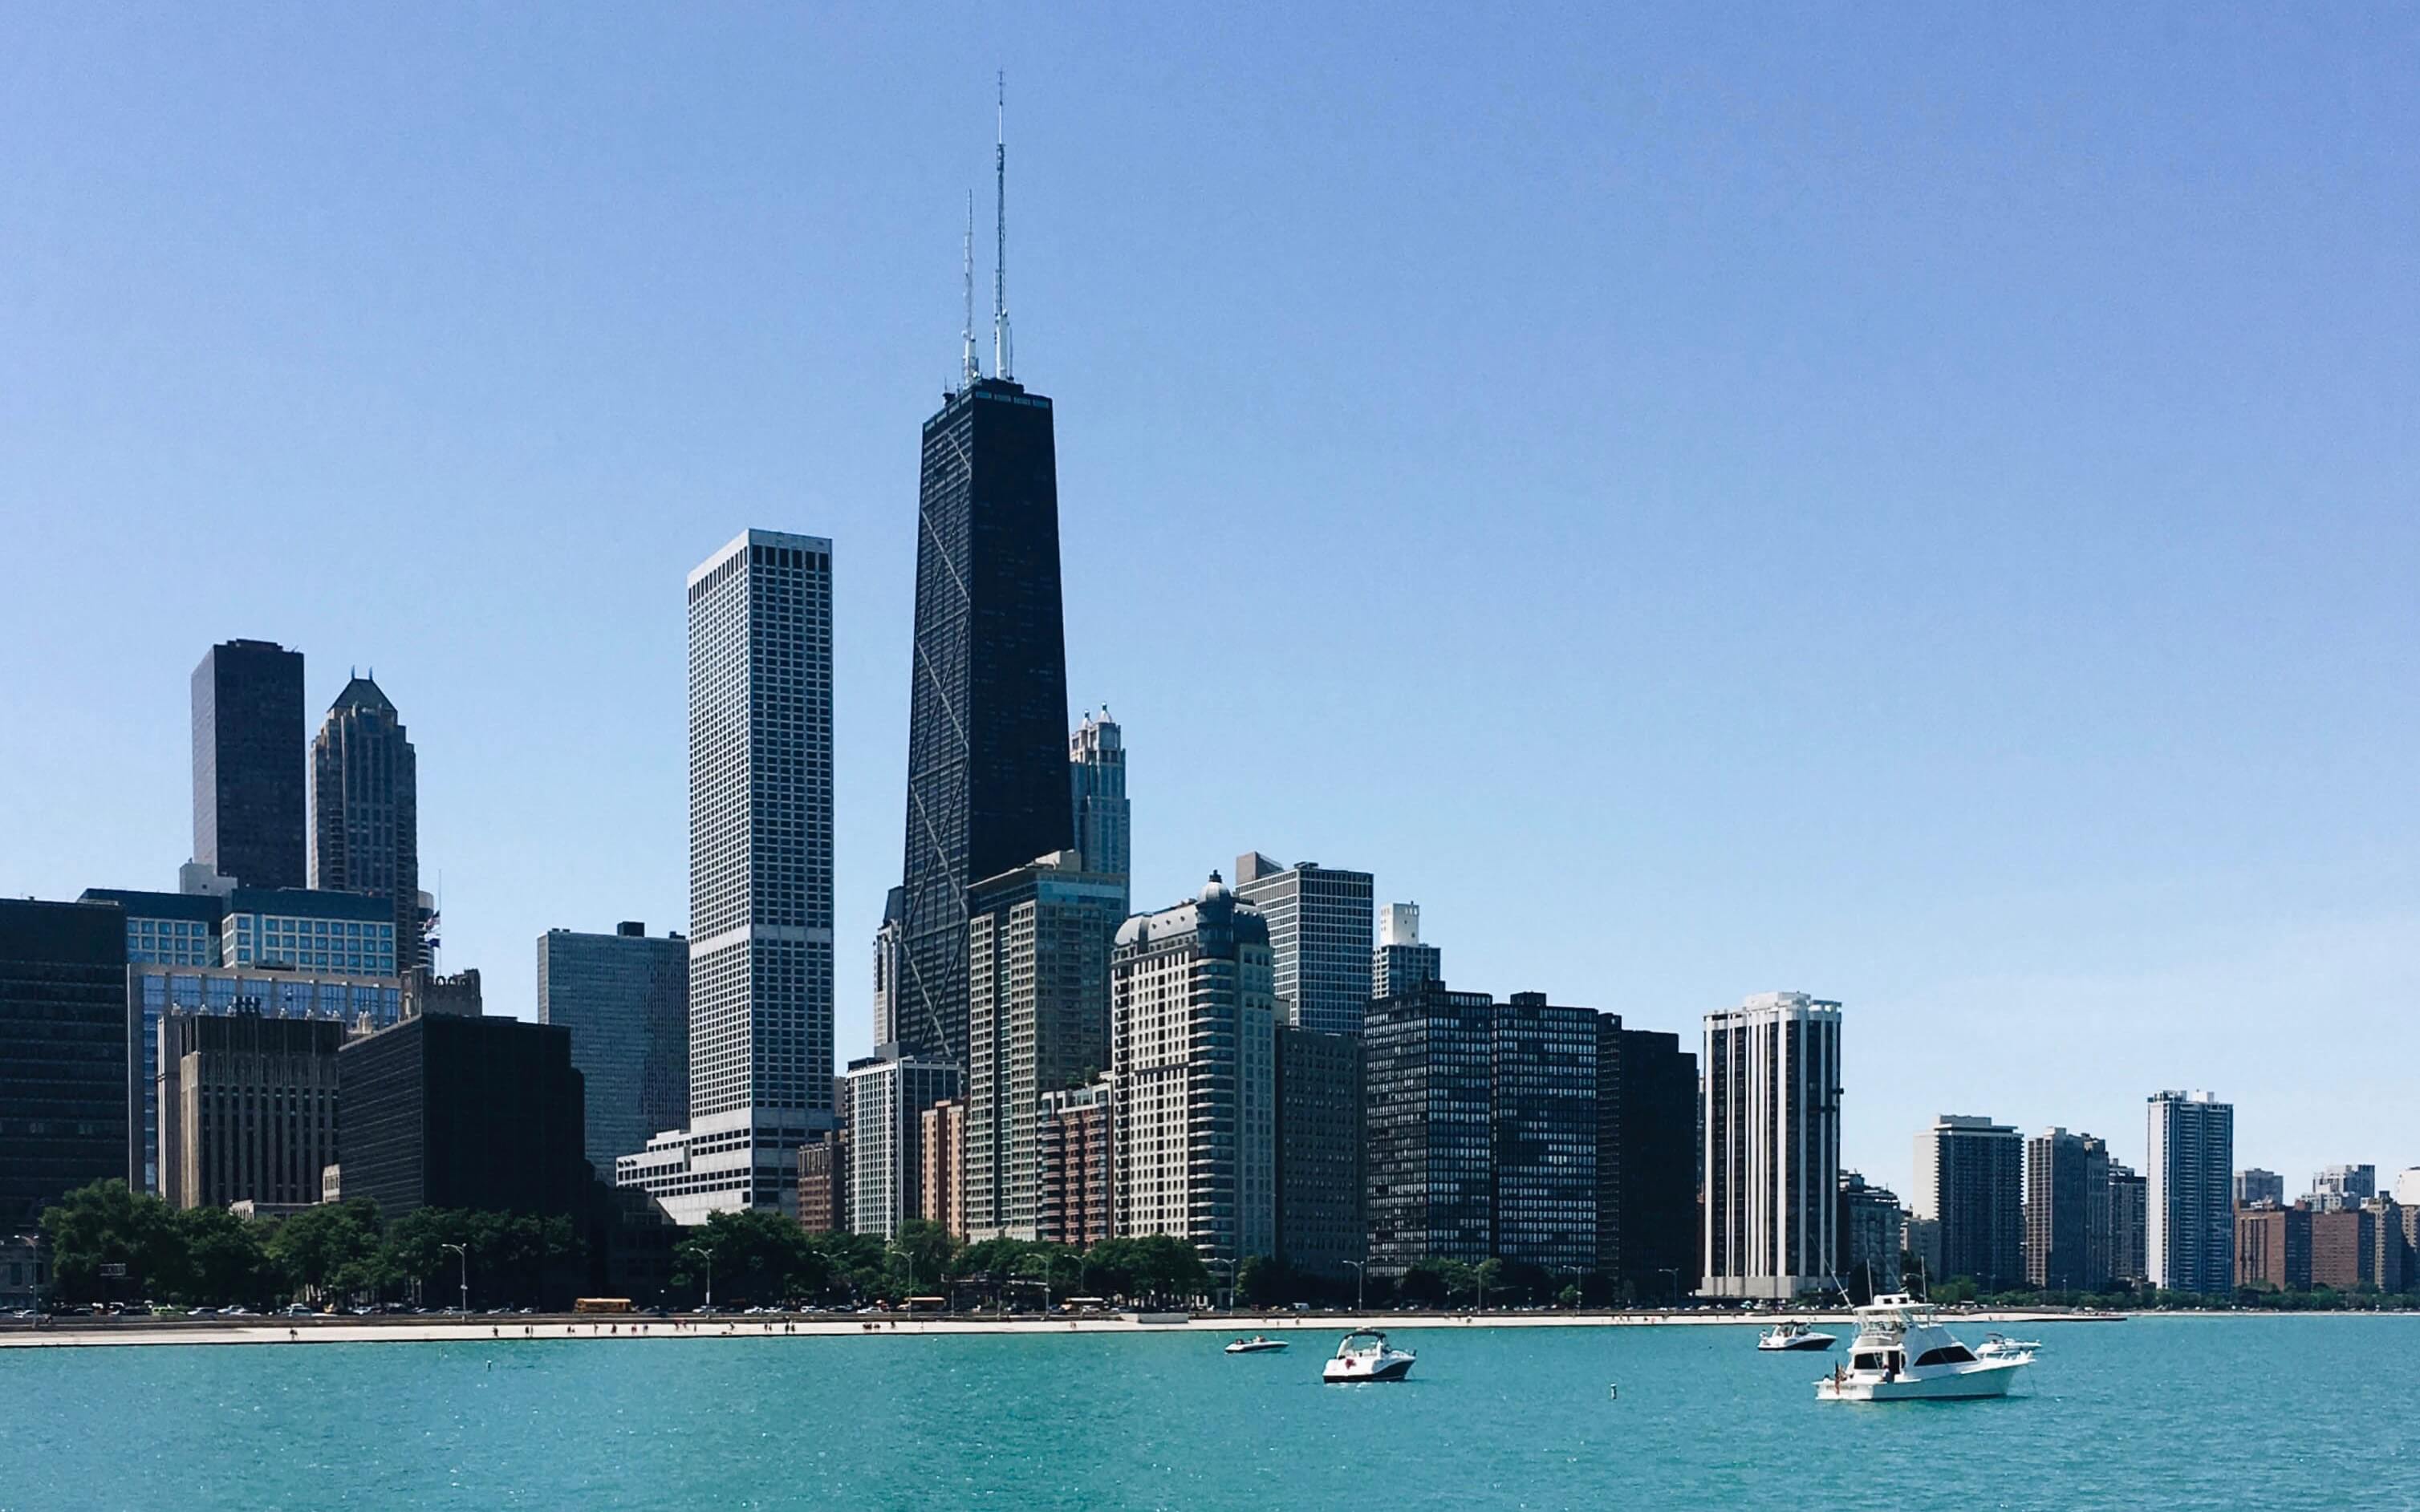 Chicago city photo